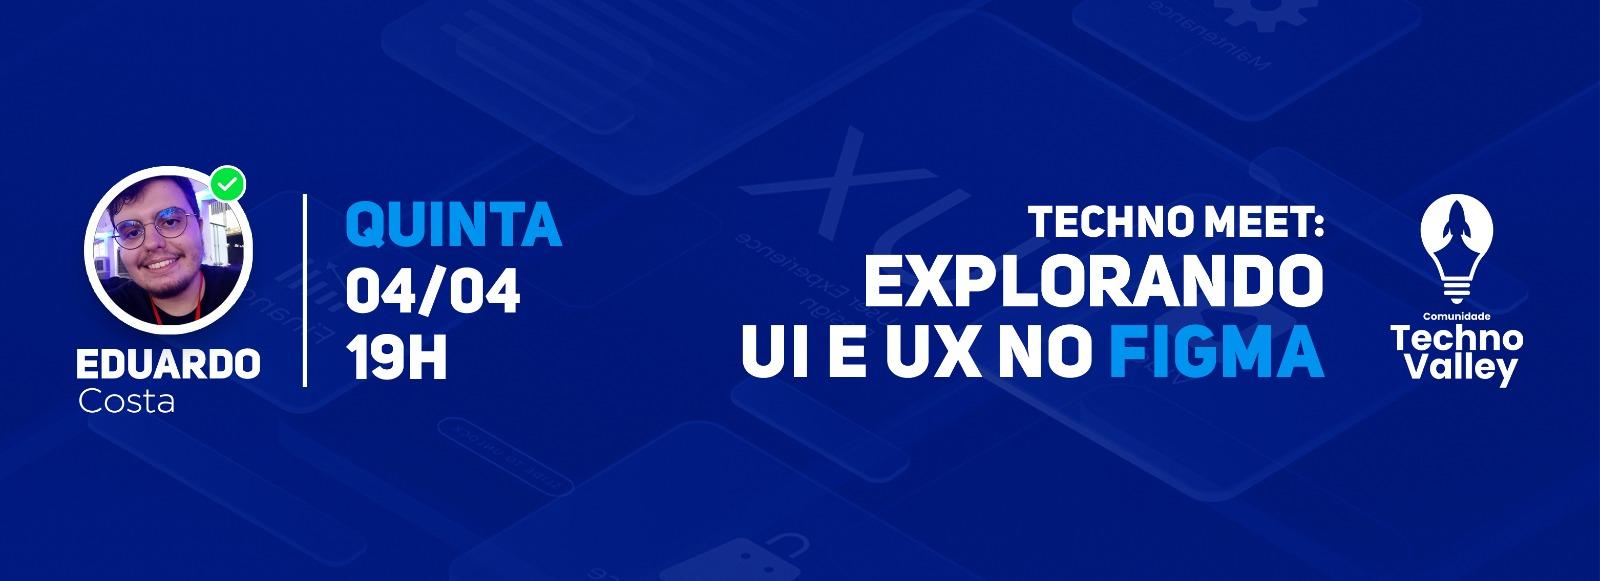 Banner do evento Techno Meet: Explorando UI e UX no Figma